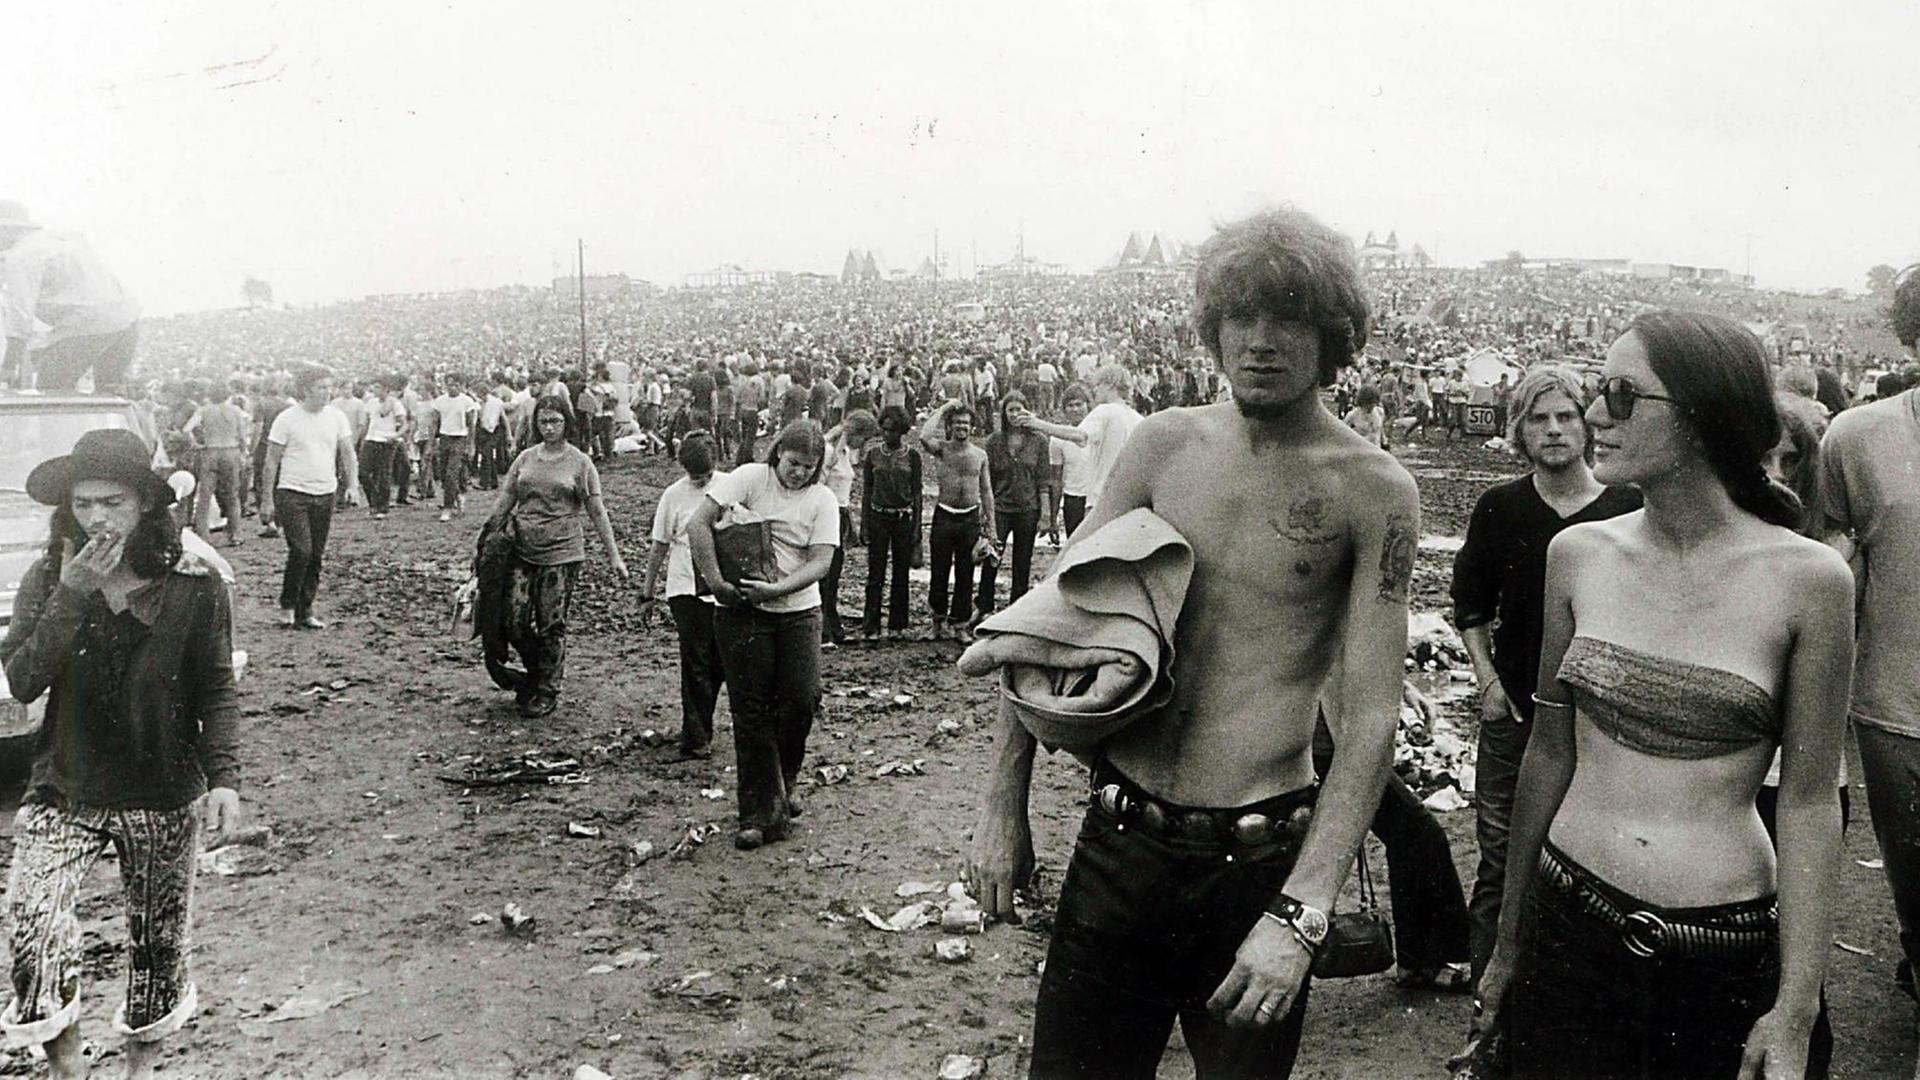 Woodstock 1969, schwarz-weiß Fotografie: Festivalbesucher laufen über den schlammigen Boden. Rechts eine junge Frau mit Sonnenbrille und ein Mann ohne T-Shirt.